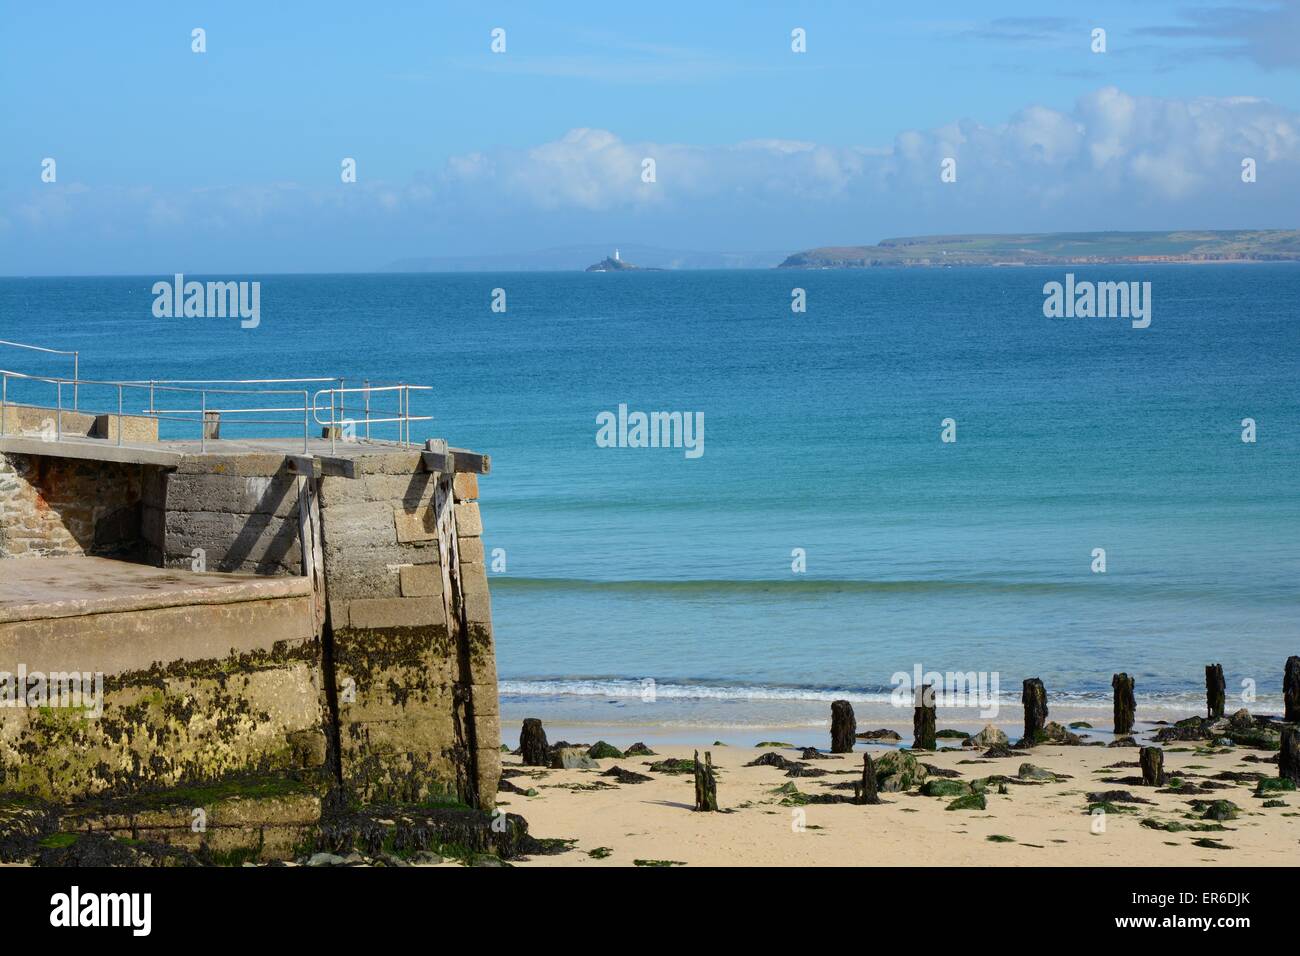 Beach and bay at Saint Ives, Cornwall, England. Stock Photo